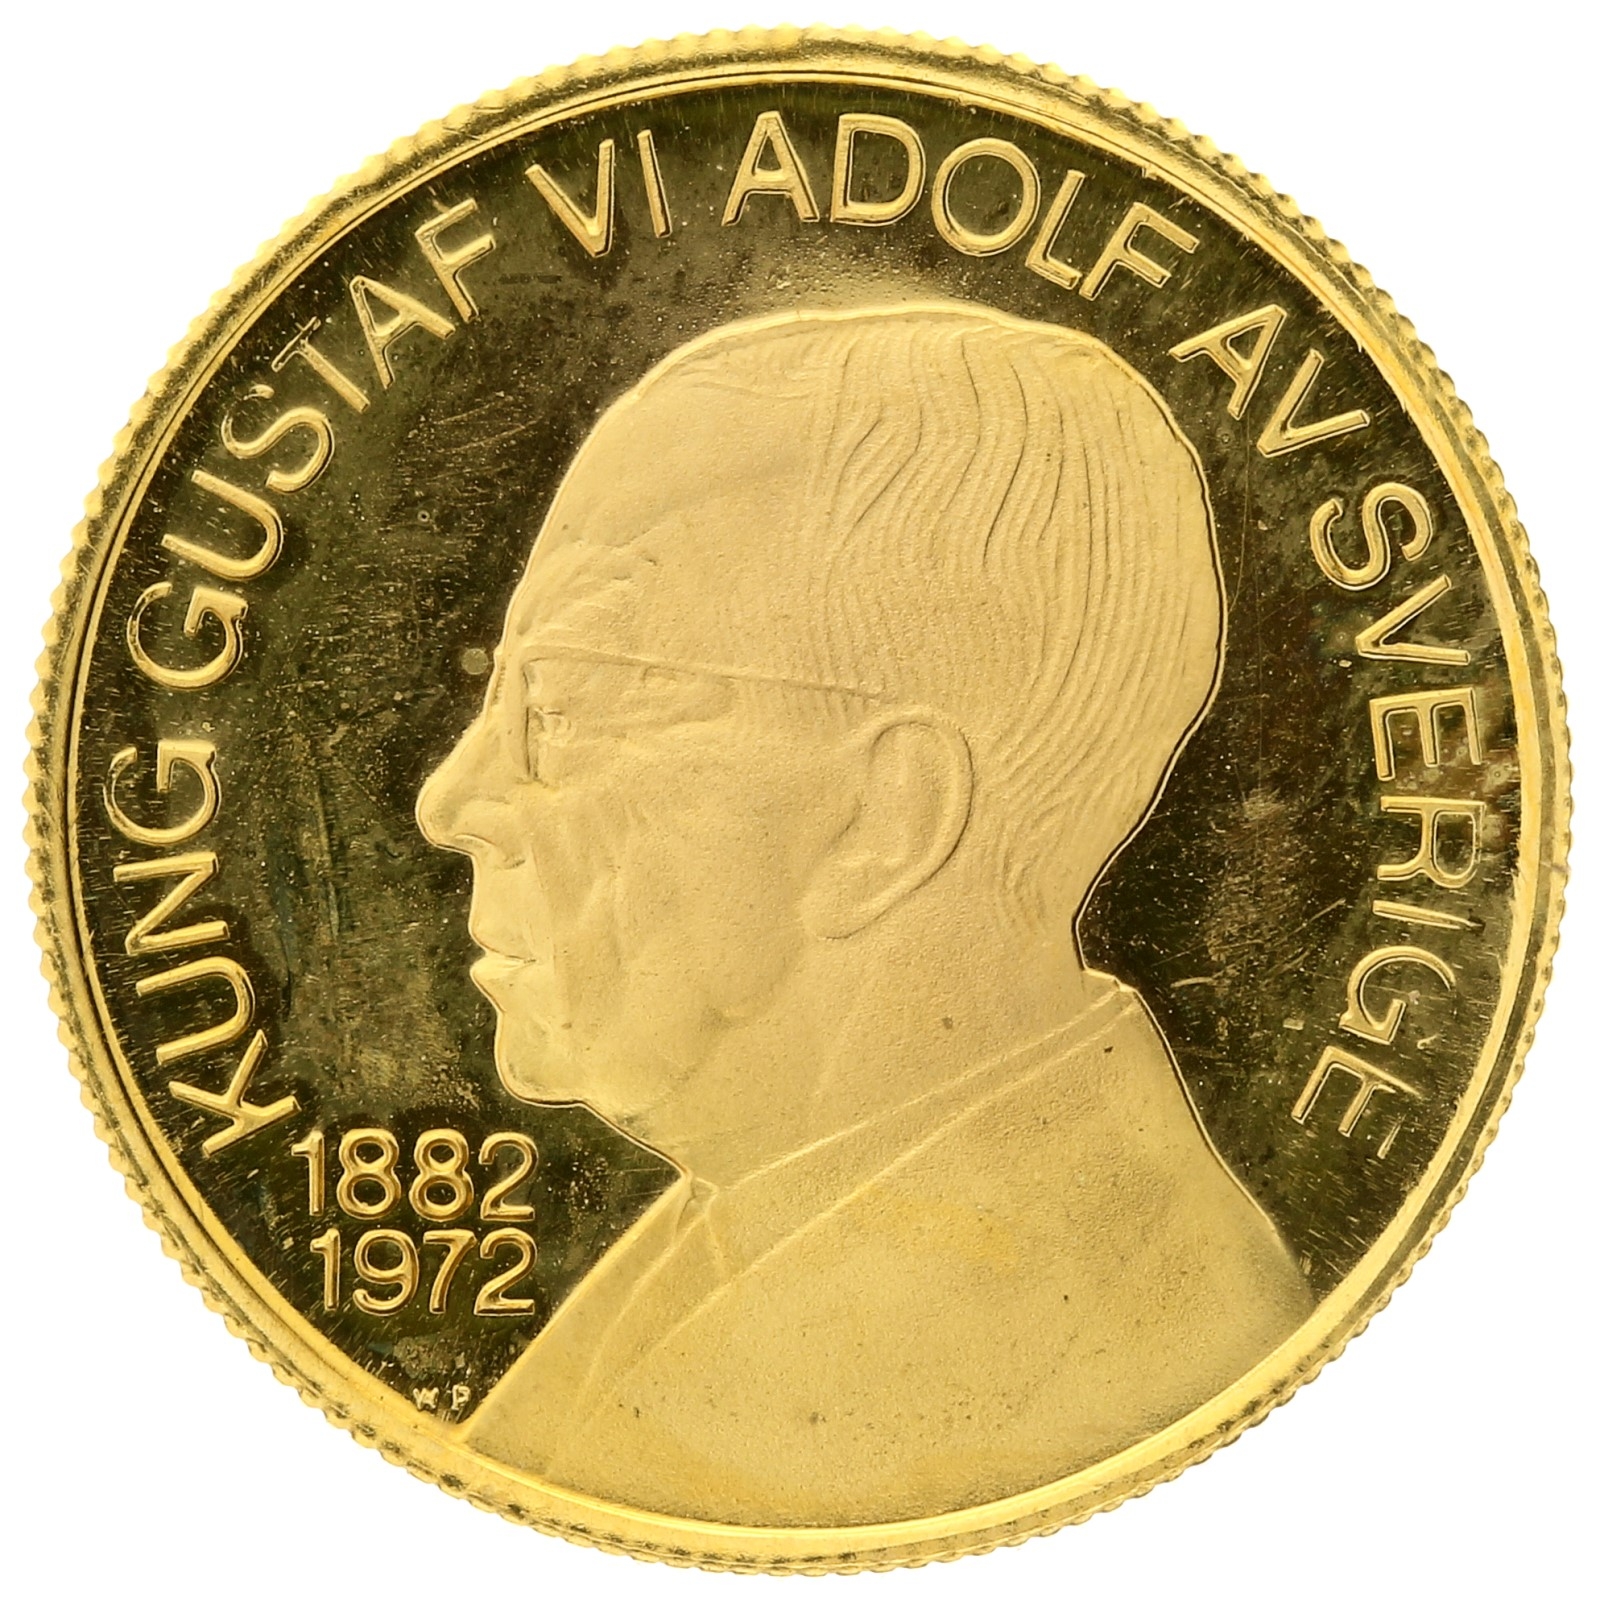 Denmark - King Gustaf VI Adolf - 1972 - Medal (ducat)